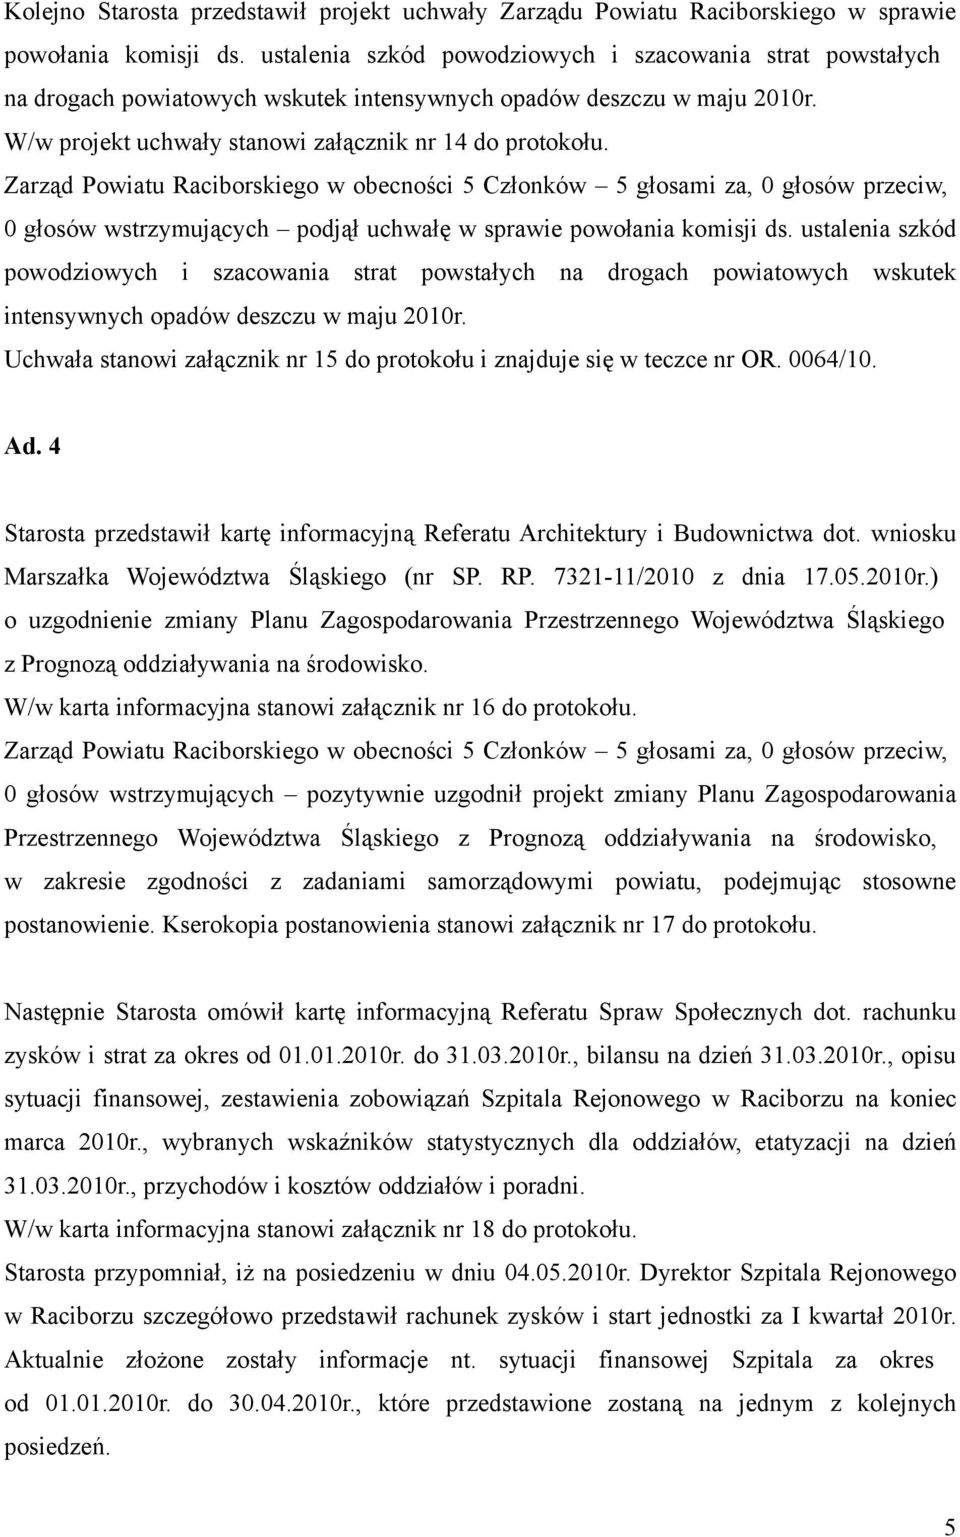 Zarząd Powiatu Raciborskiego w obecności 5 Członków 5 głosami za, 0 głosów przeciw, 0 głosów wstrzymujących podjął uchwałę w sprawie powołania komisji ds.